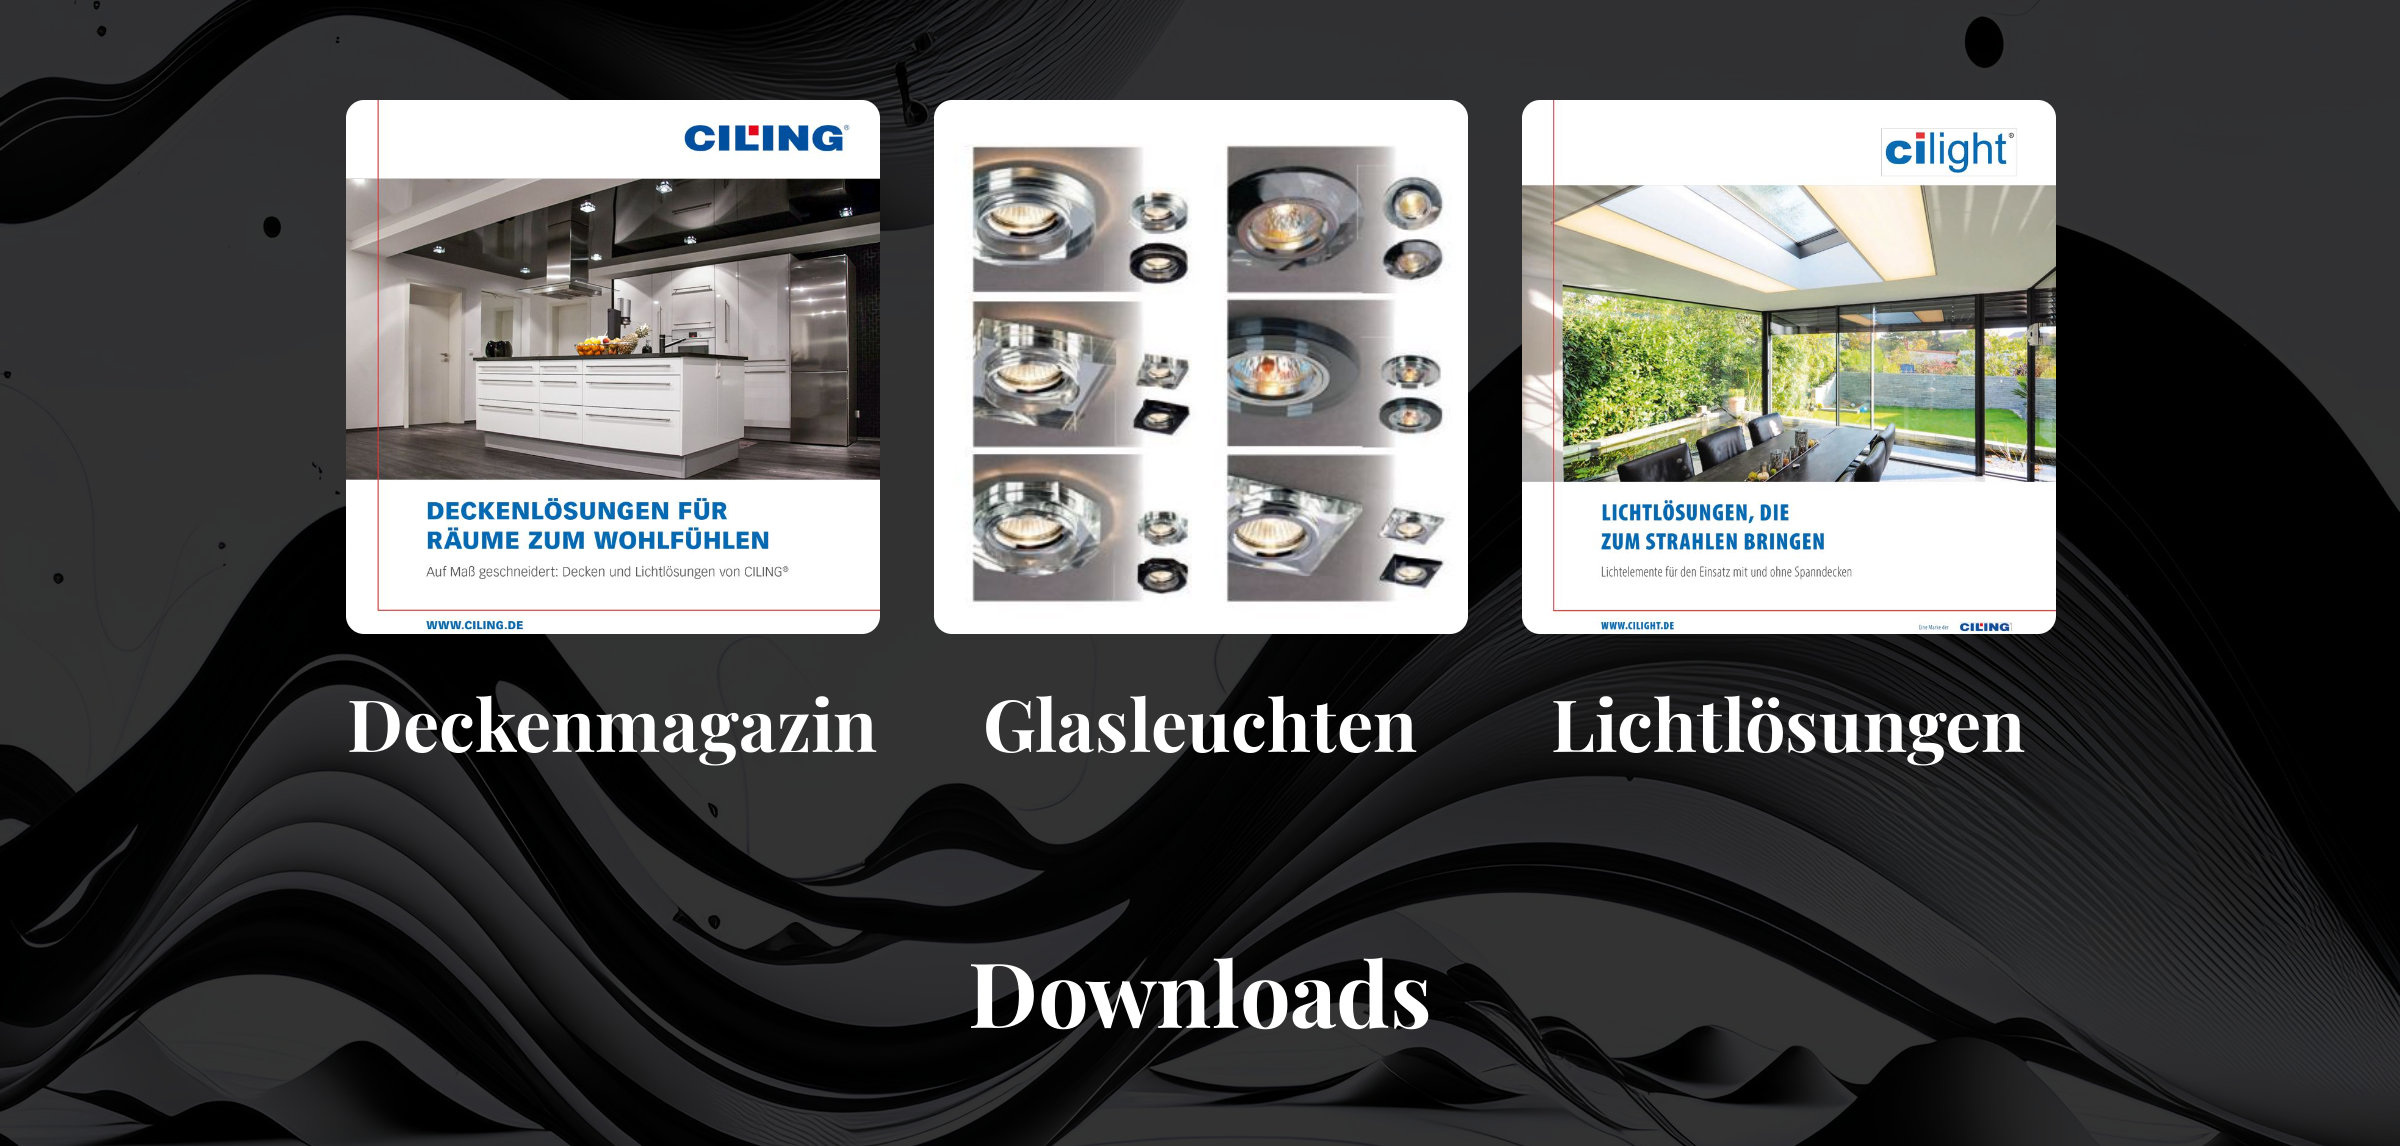 Deckenmagazin Broschüre - Downloads